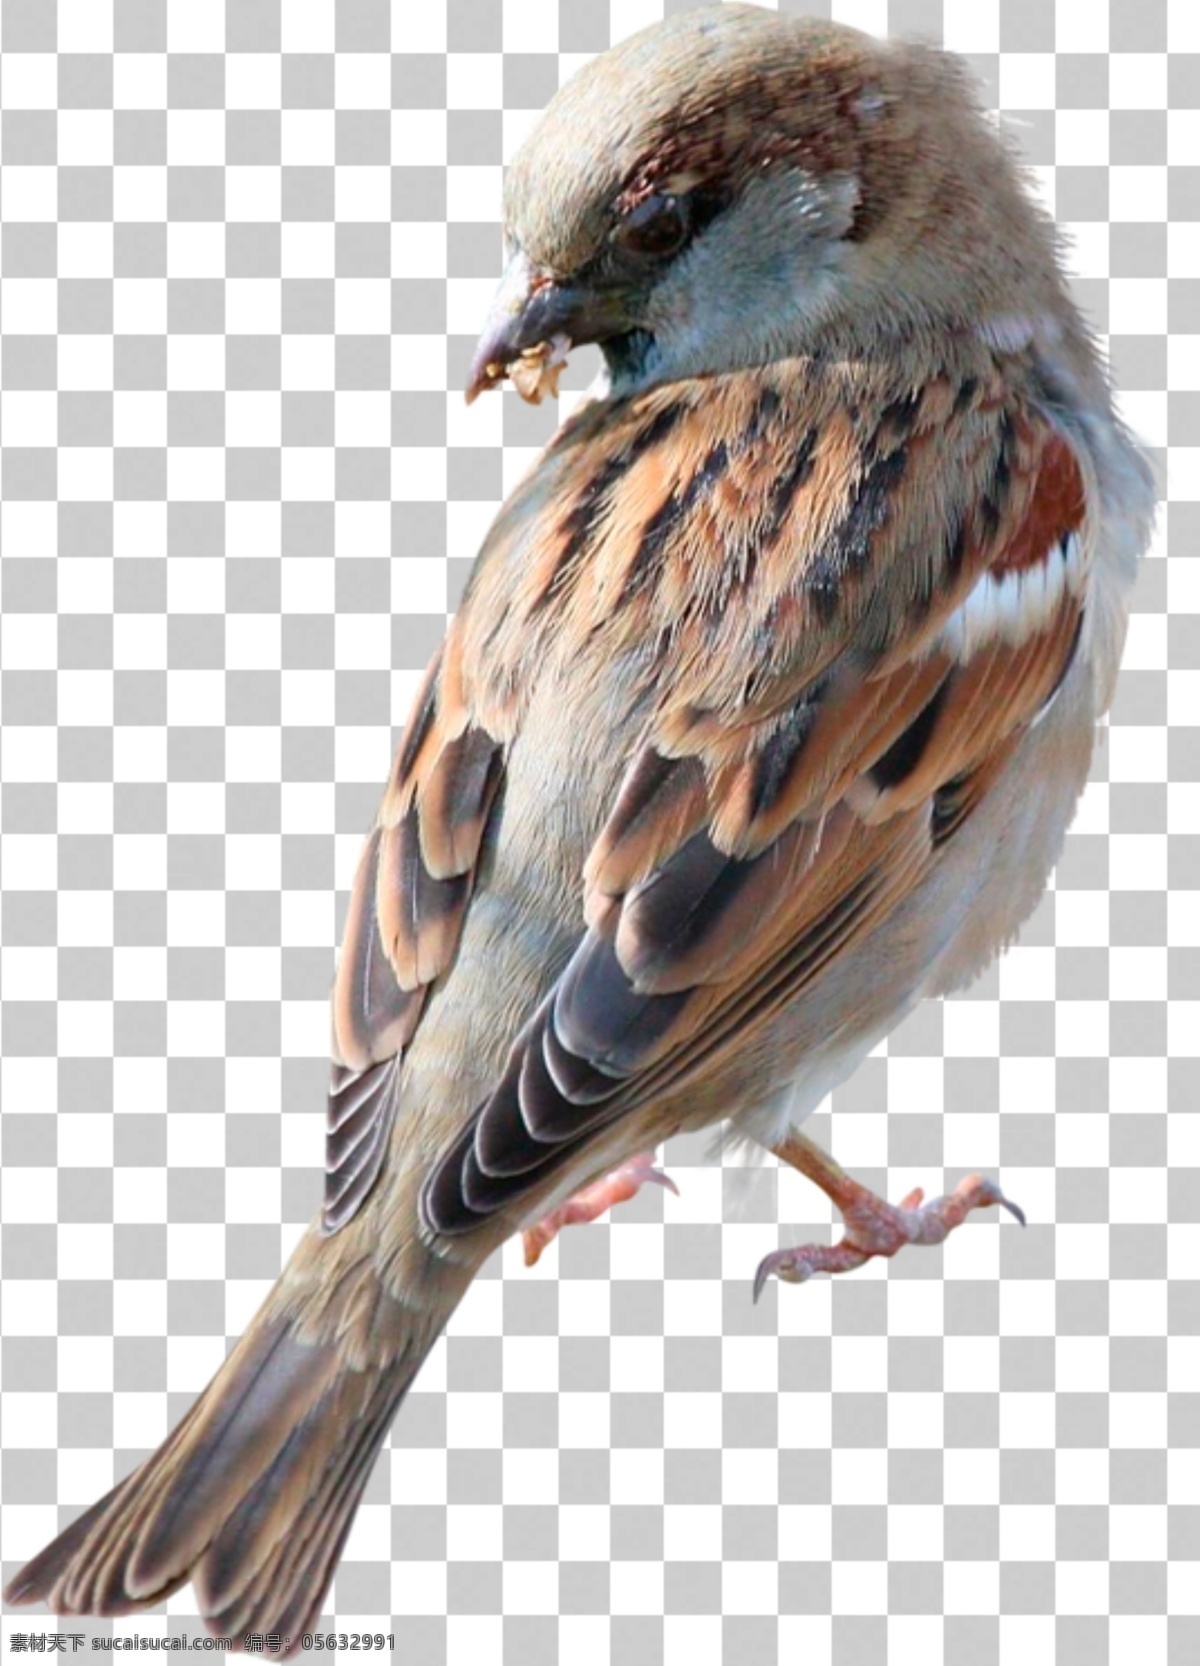 麻雀图片 麻雀 飞鸟 小鸟 鸟 动物 动物世界 生物世界 透明底 免抠图 分层图 分层 动物透明底 鸟类